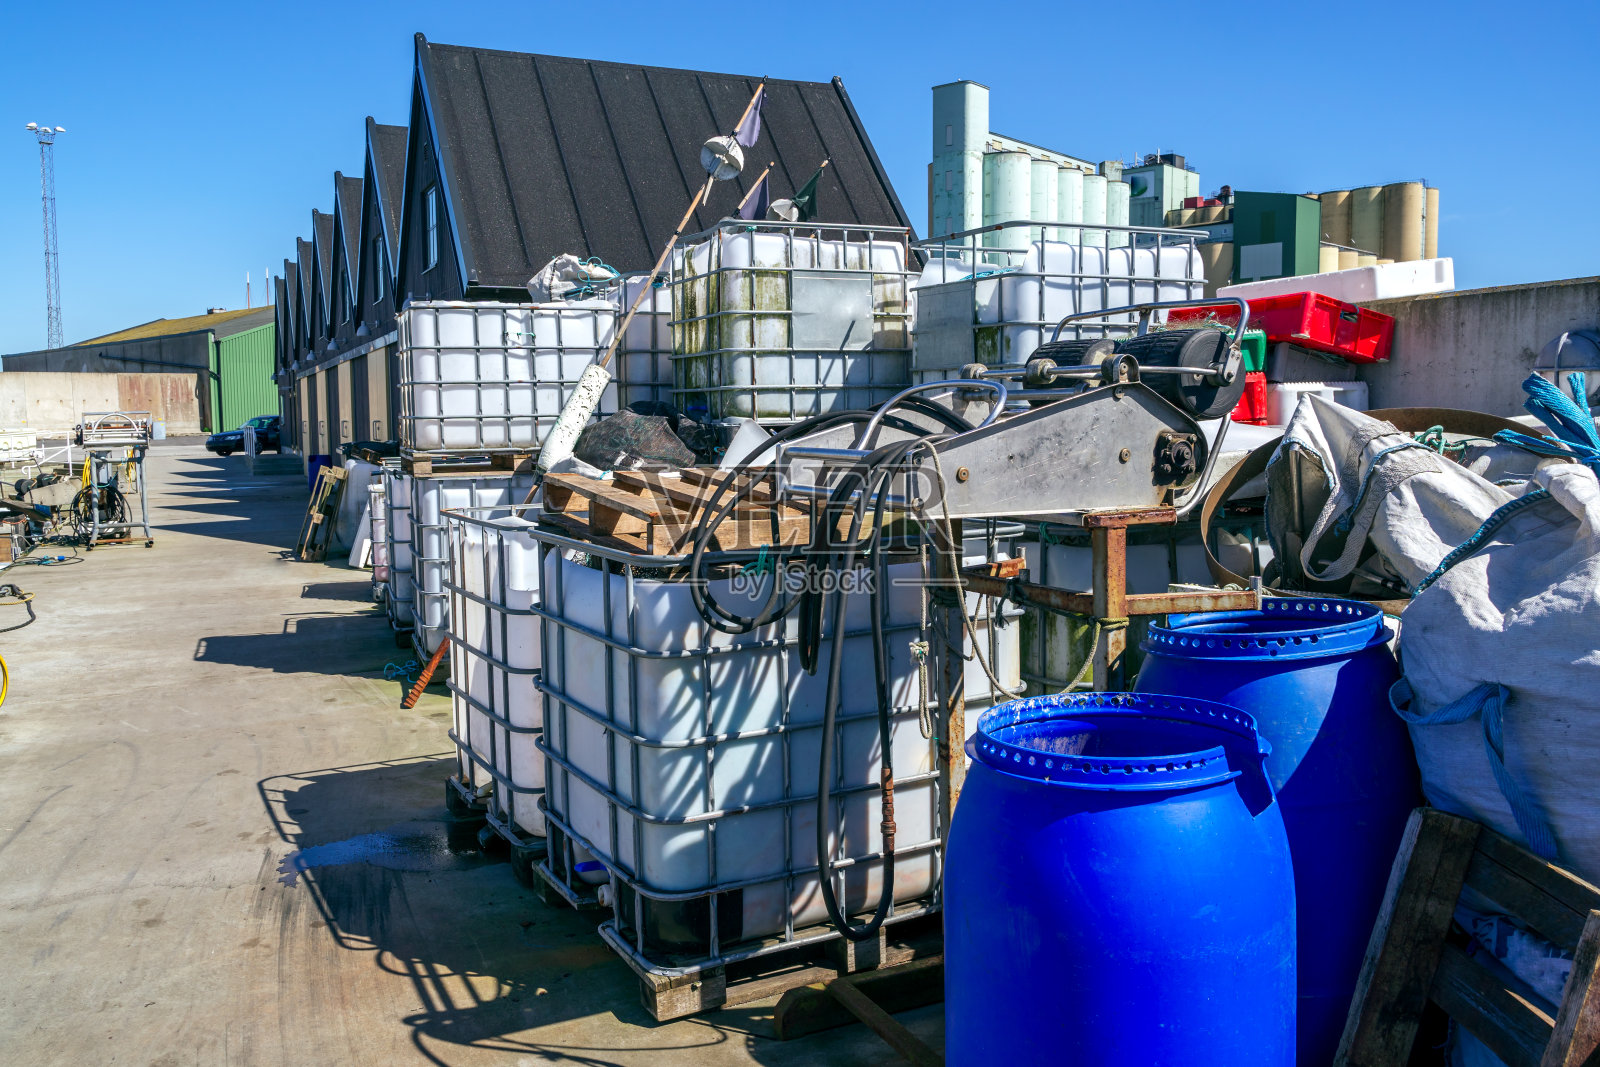 瑞典斯塔德港的塑料渔网容器照片摄影图片